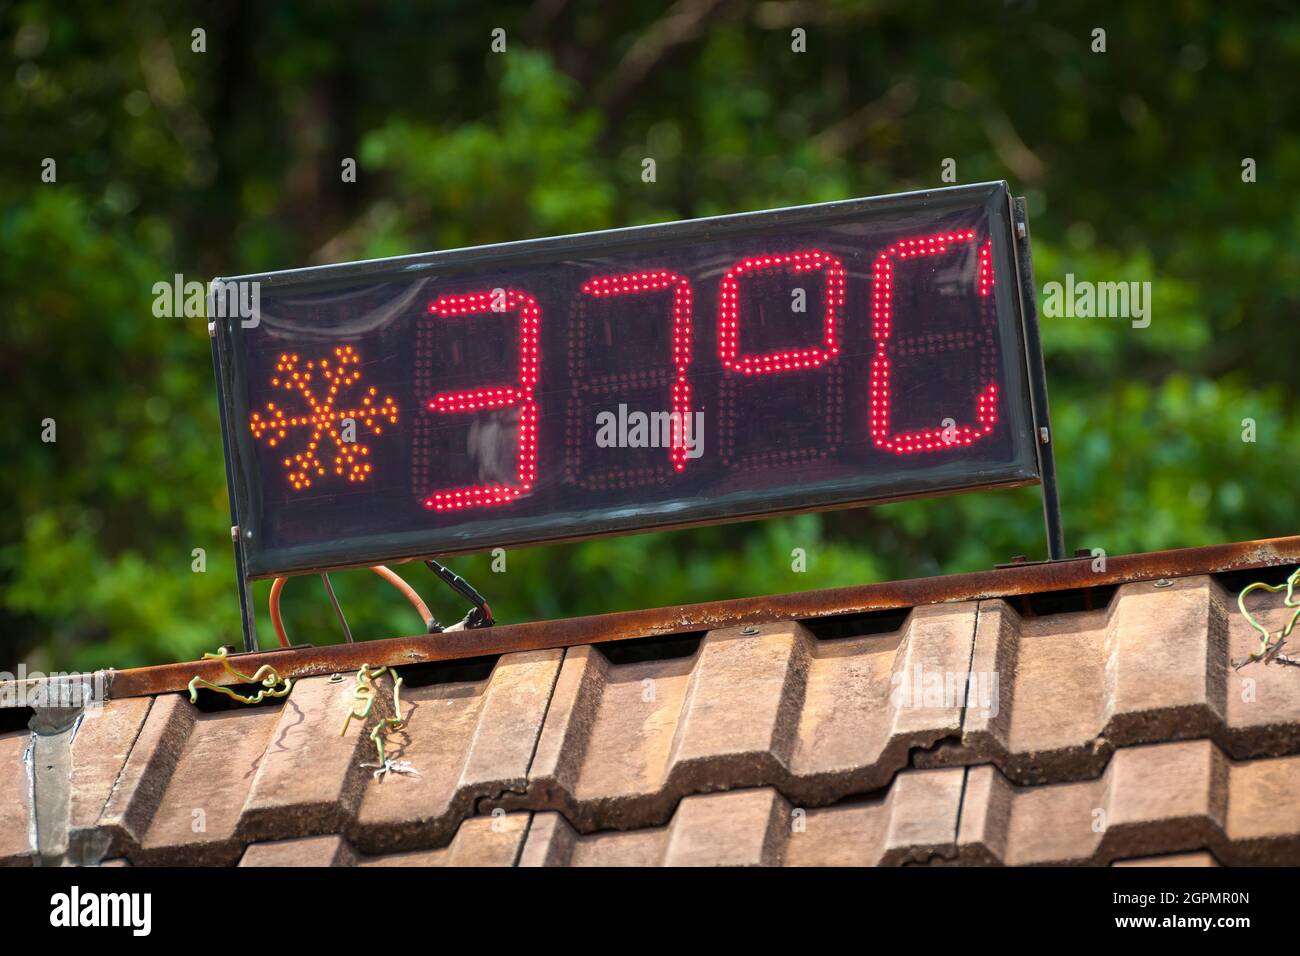 Un cartello LED in Discovery Bay, Lantau Island, Hong Kong, che indica una temperatura dell'aria di 37 gradi Celsius (98.6 Fahrenheit) Foto Stock